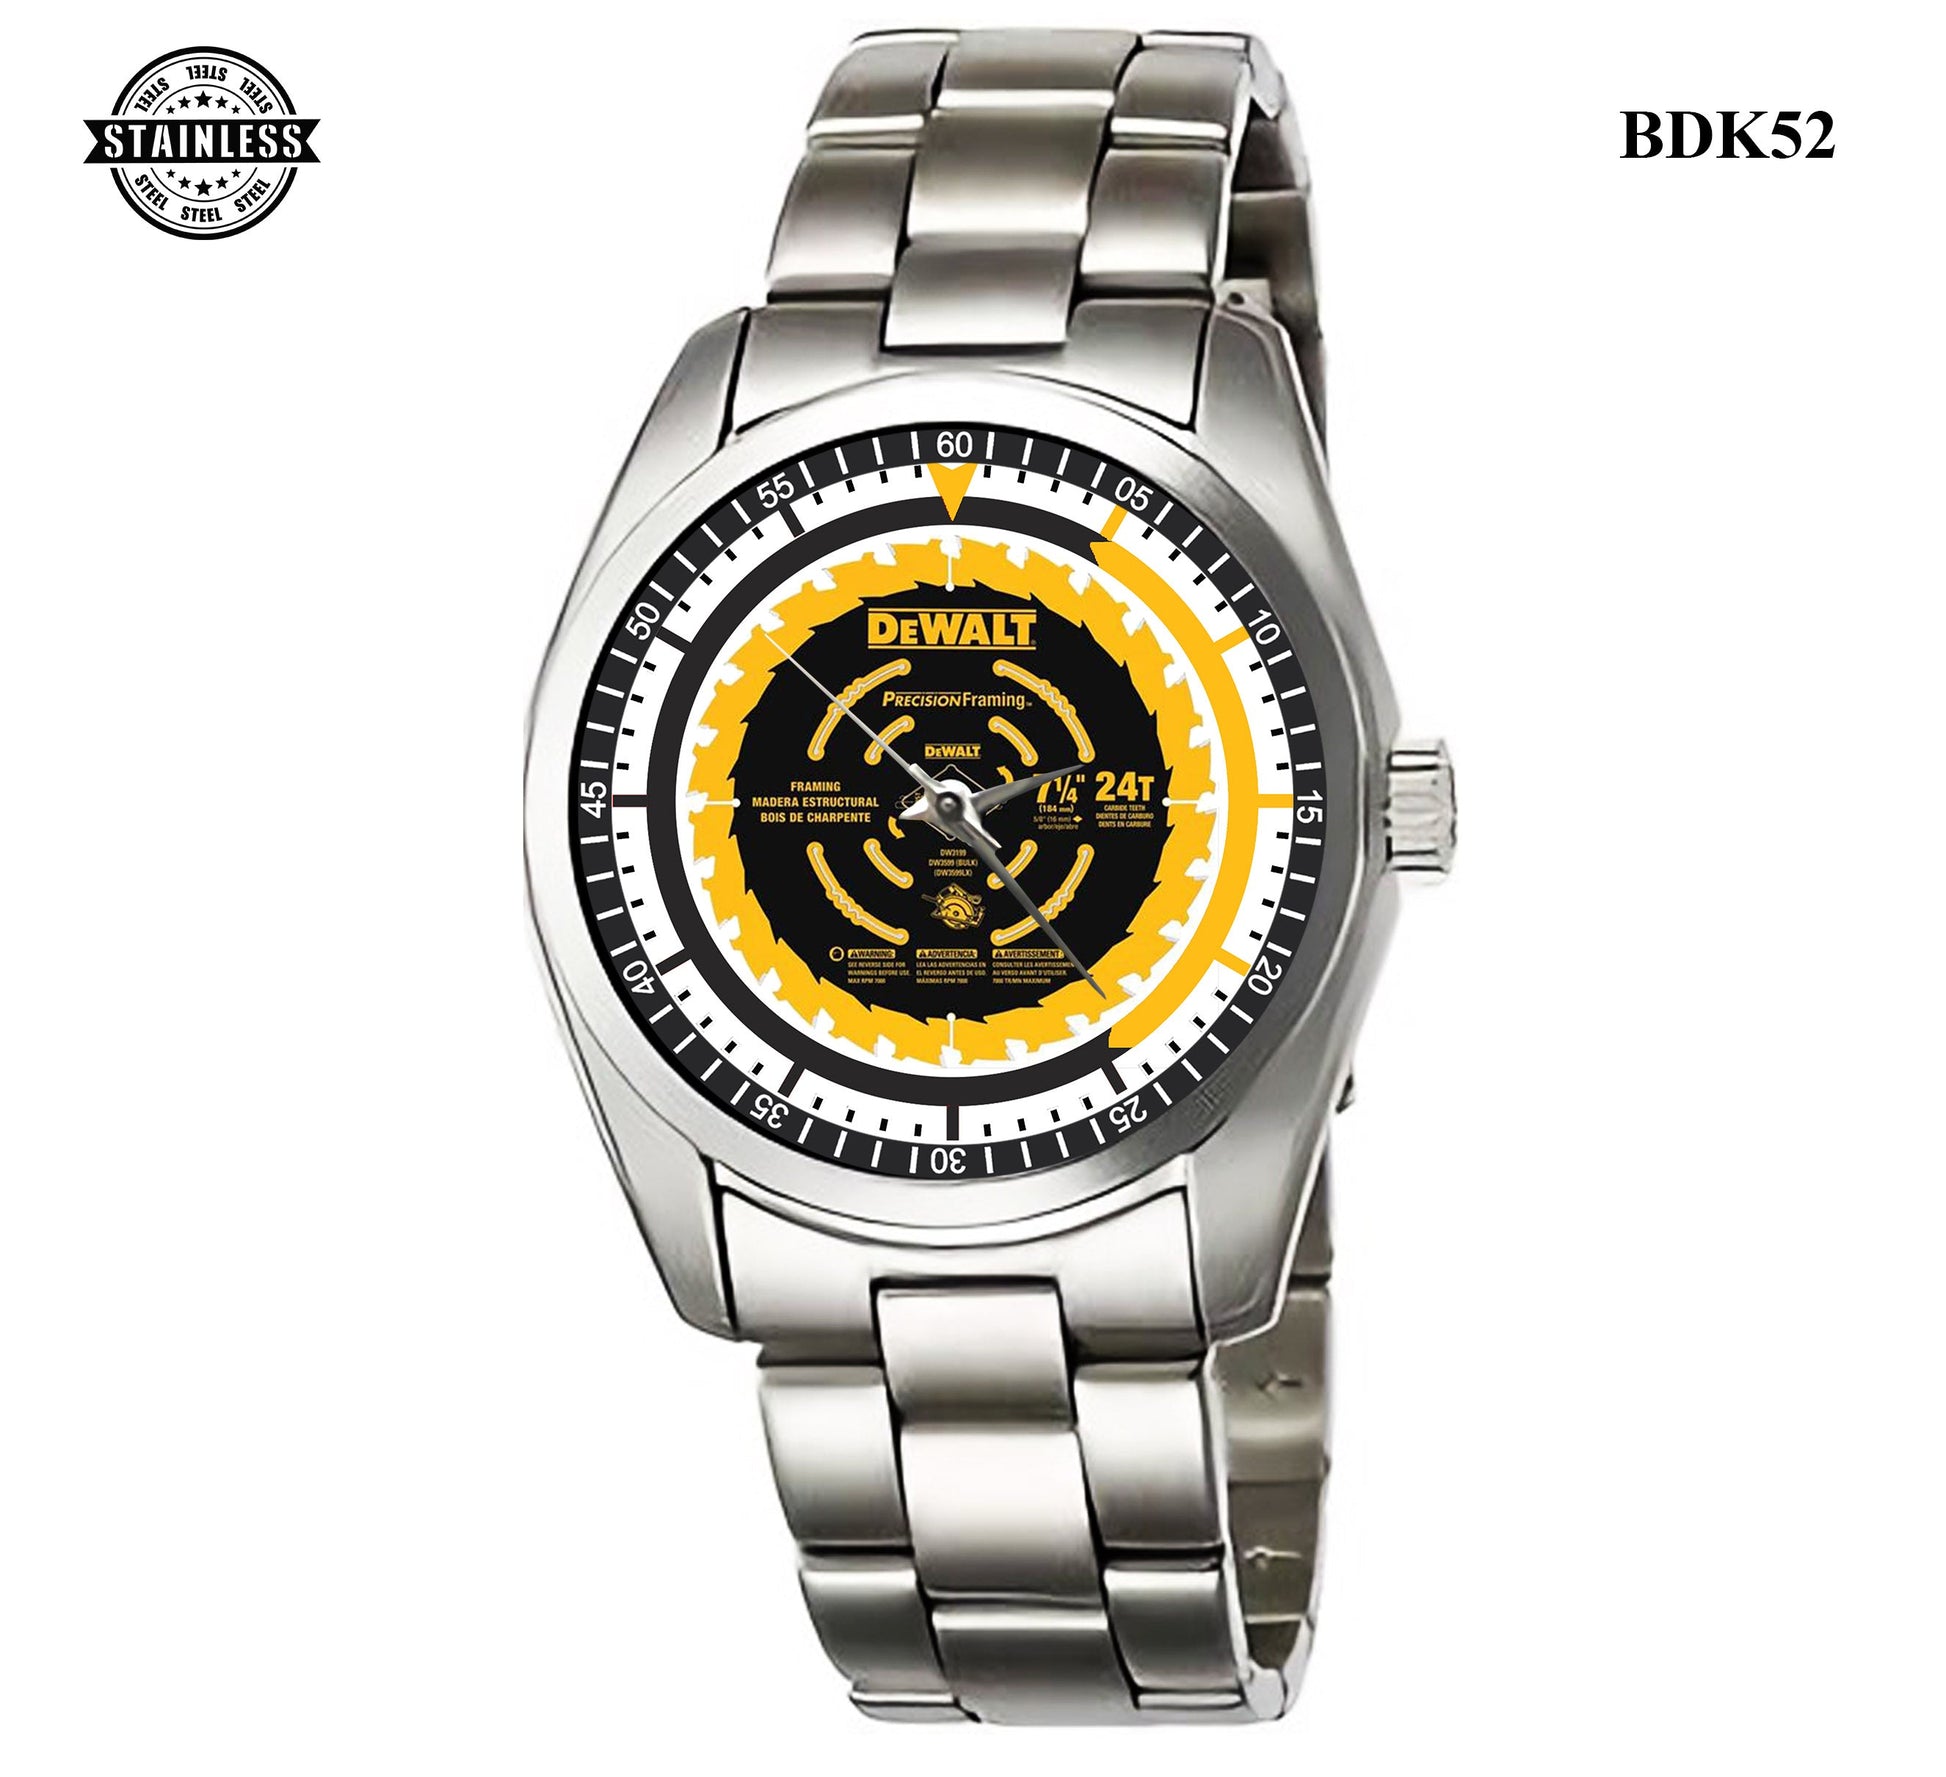 Dewalt dw3199  Watches Bdk52